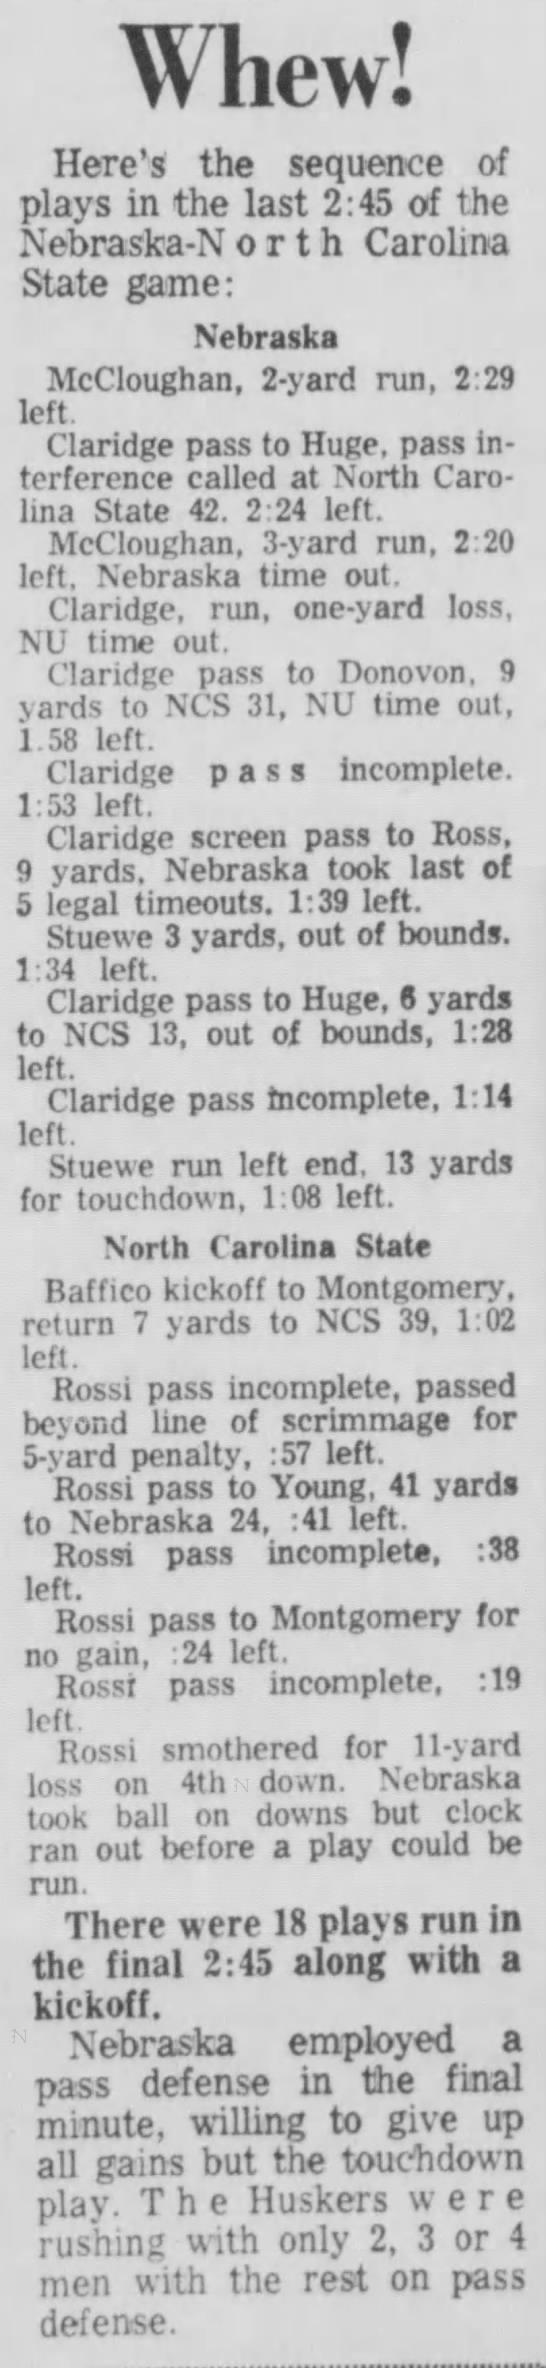 1962 Nebraska-North Carolina State football, final 2:45 - 